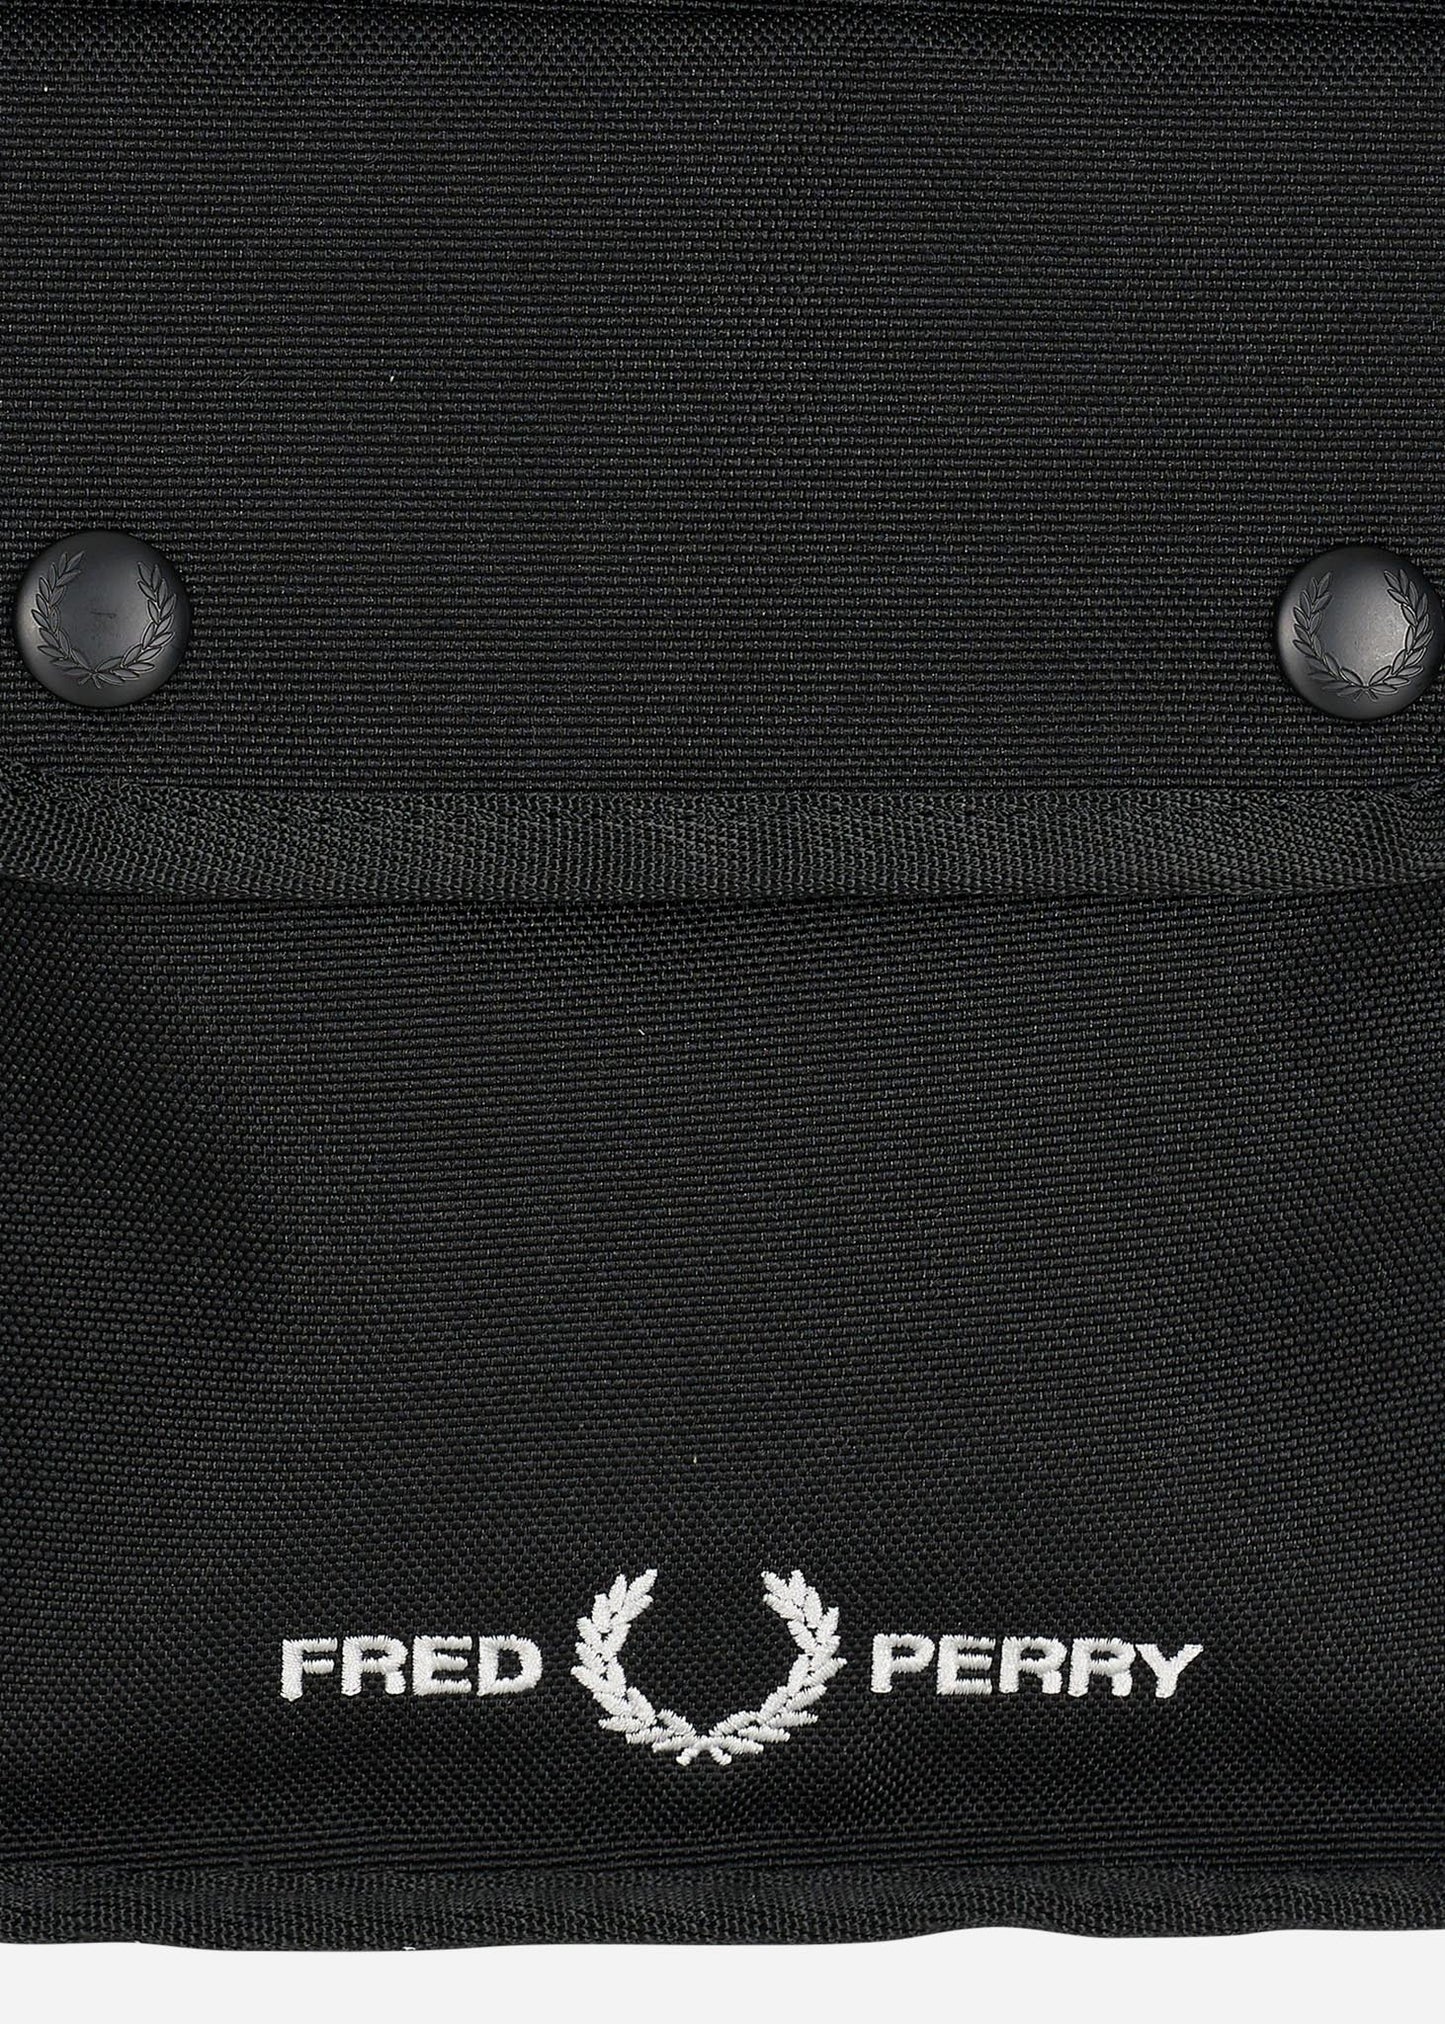 Branded side bag - black